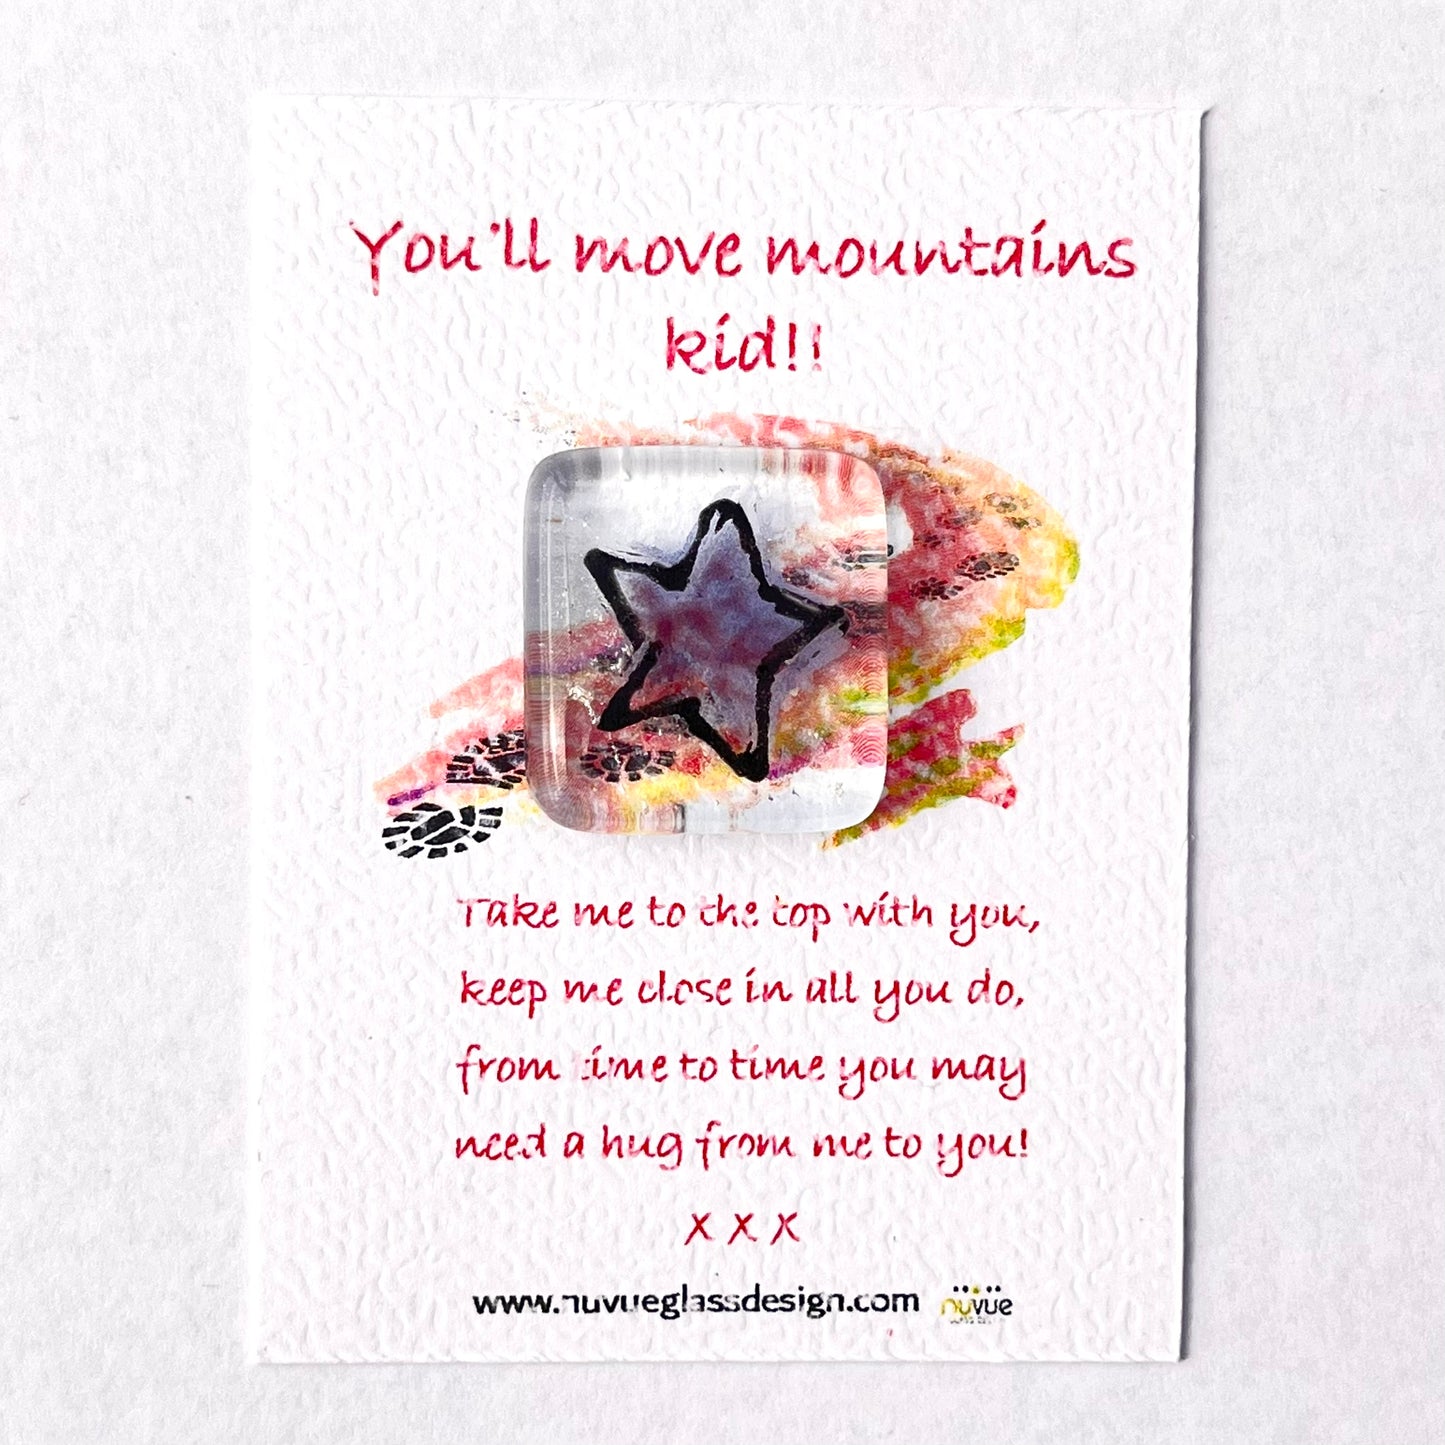 You'll move mountains! pocket hugs